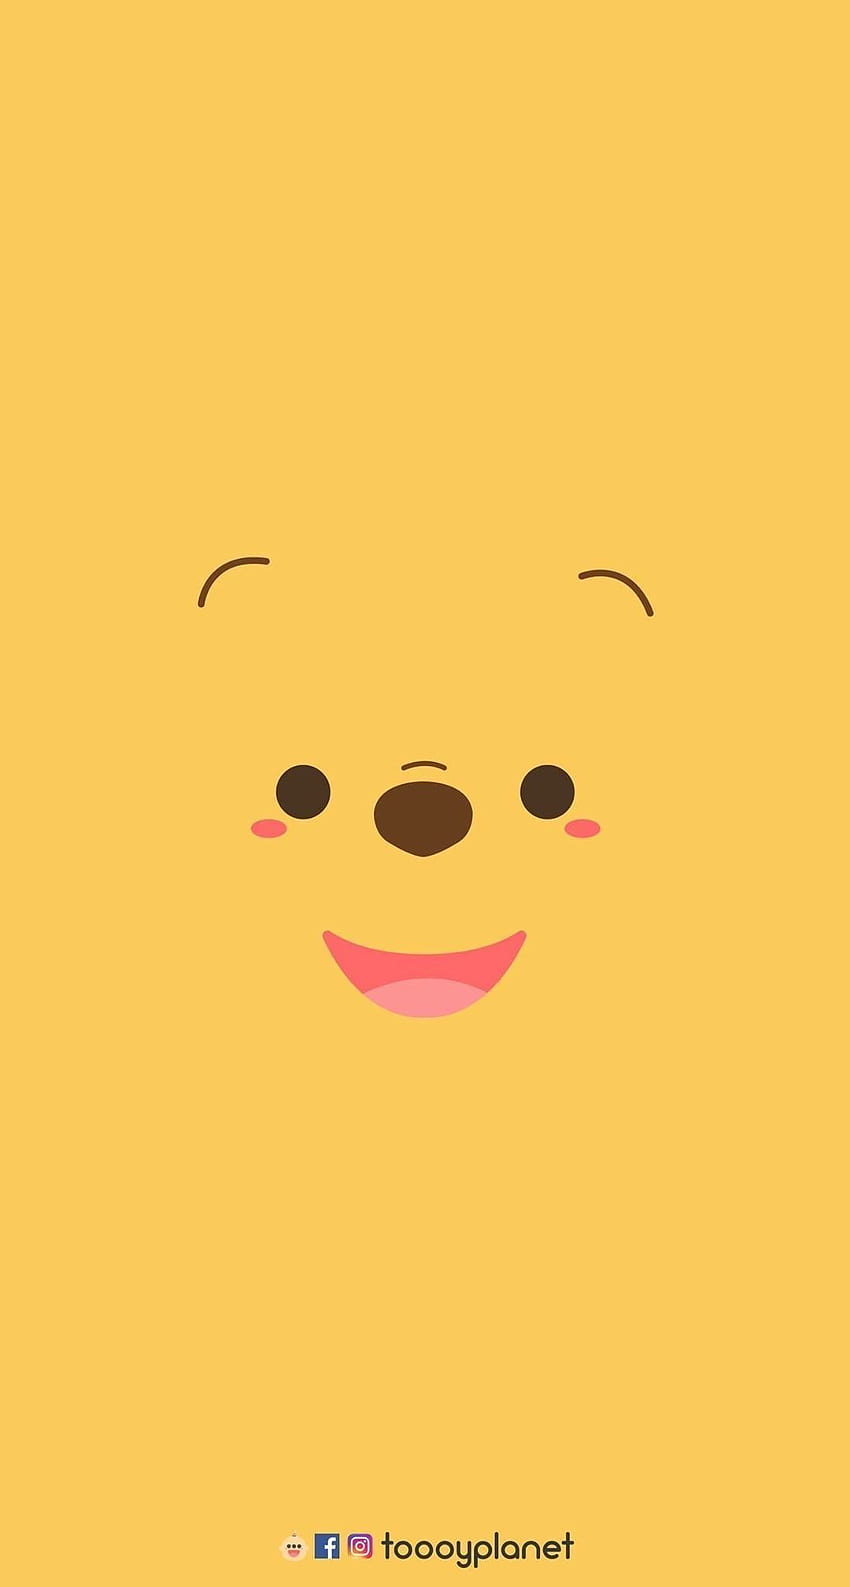 Ai là fan của Winnie The Pooh thì đây là sự lựa chọn hoàn hảo cho bạn đó! Trang web của chúng tôi cung cấp những bức ảnh độc đáo về chú gấu đáng yêu này, đảm bảo sẽ khiến bạn mê mẩn. Hãy cập nhật bức hình nền Winnie The Pooh cho đồng hồ iPhone của bạn thôi nào!